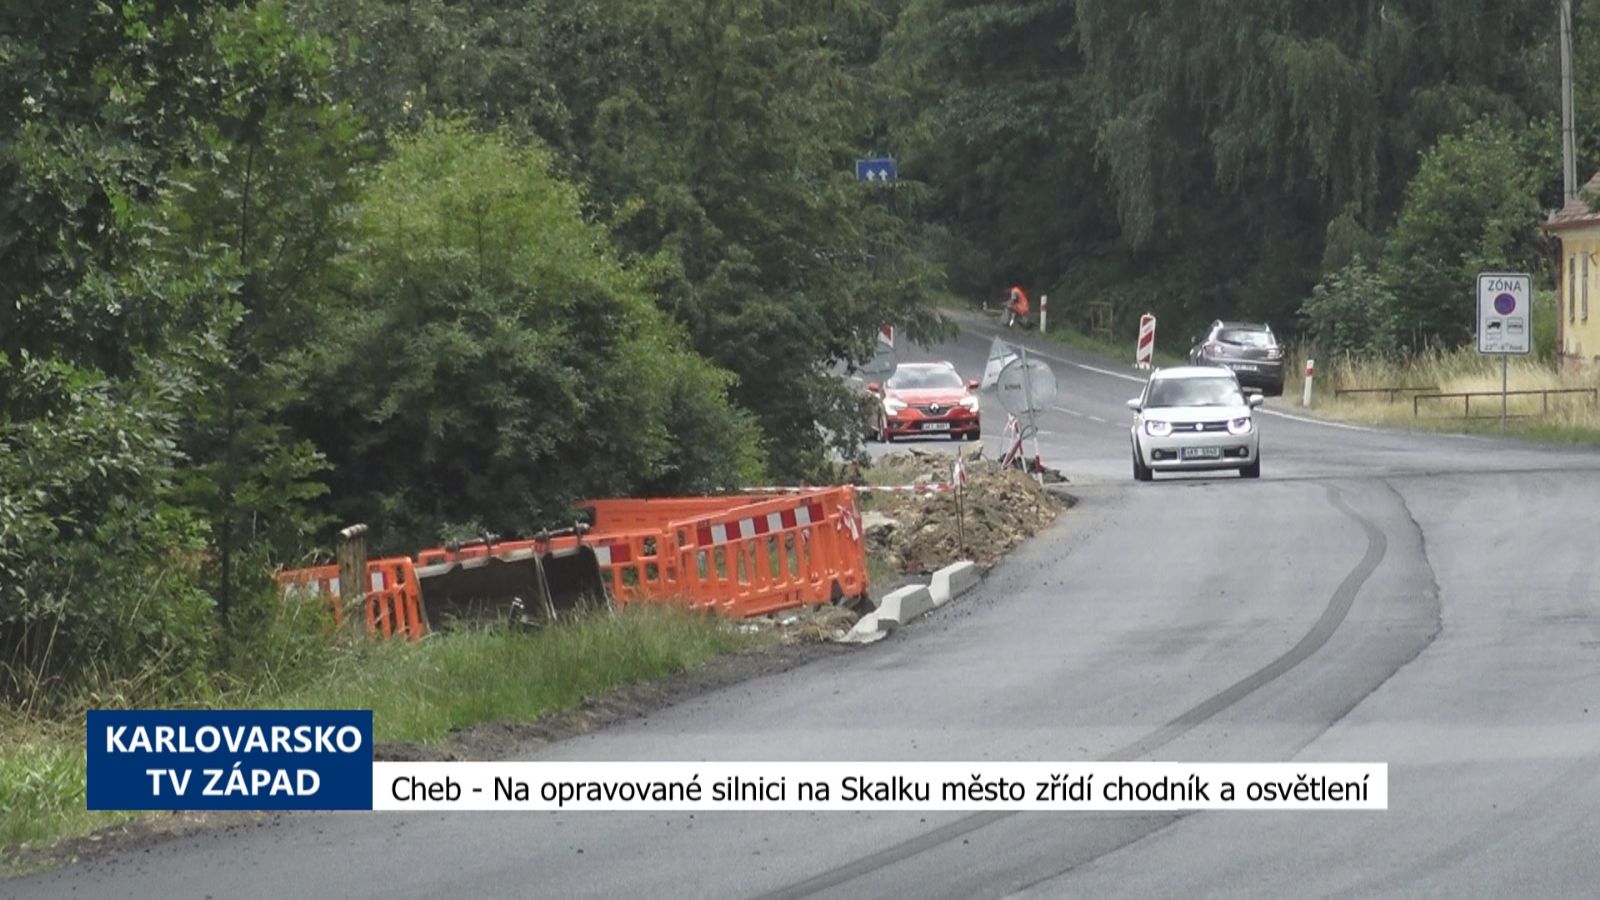 Cheb: Na opravované silnici na Skalku město zřídí chodník a přechod (TV Západ)